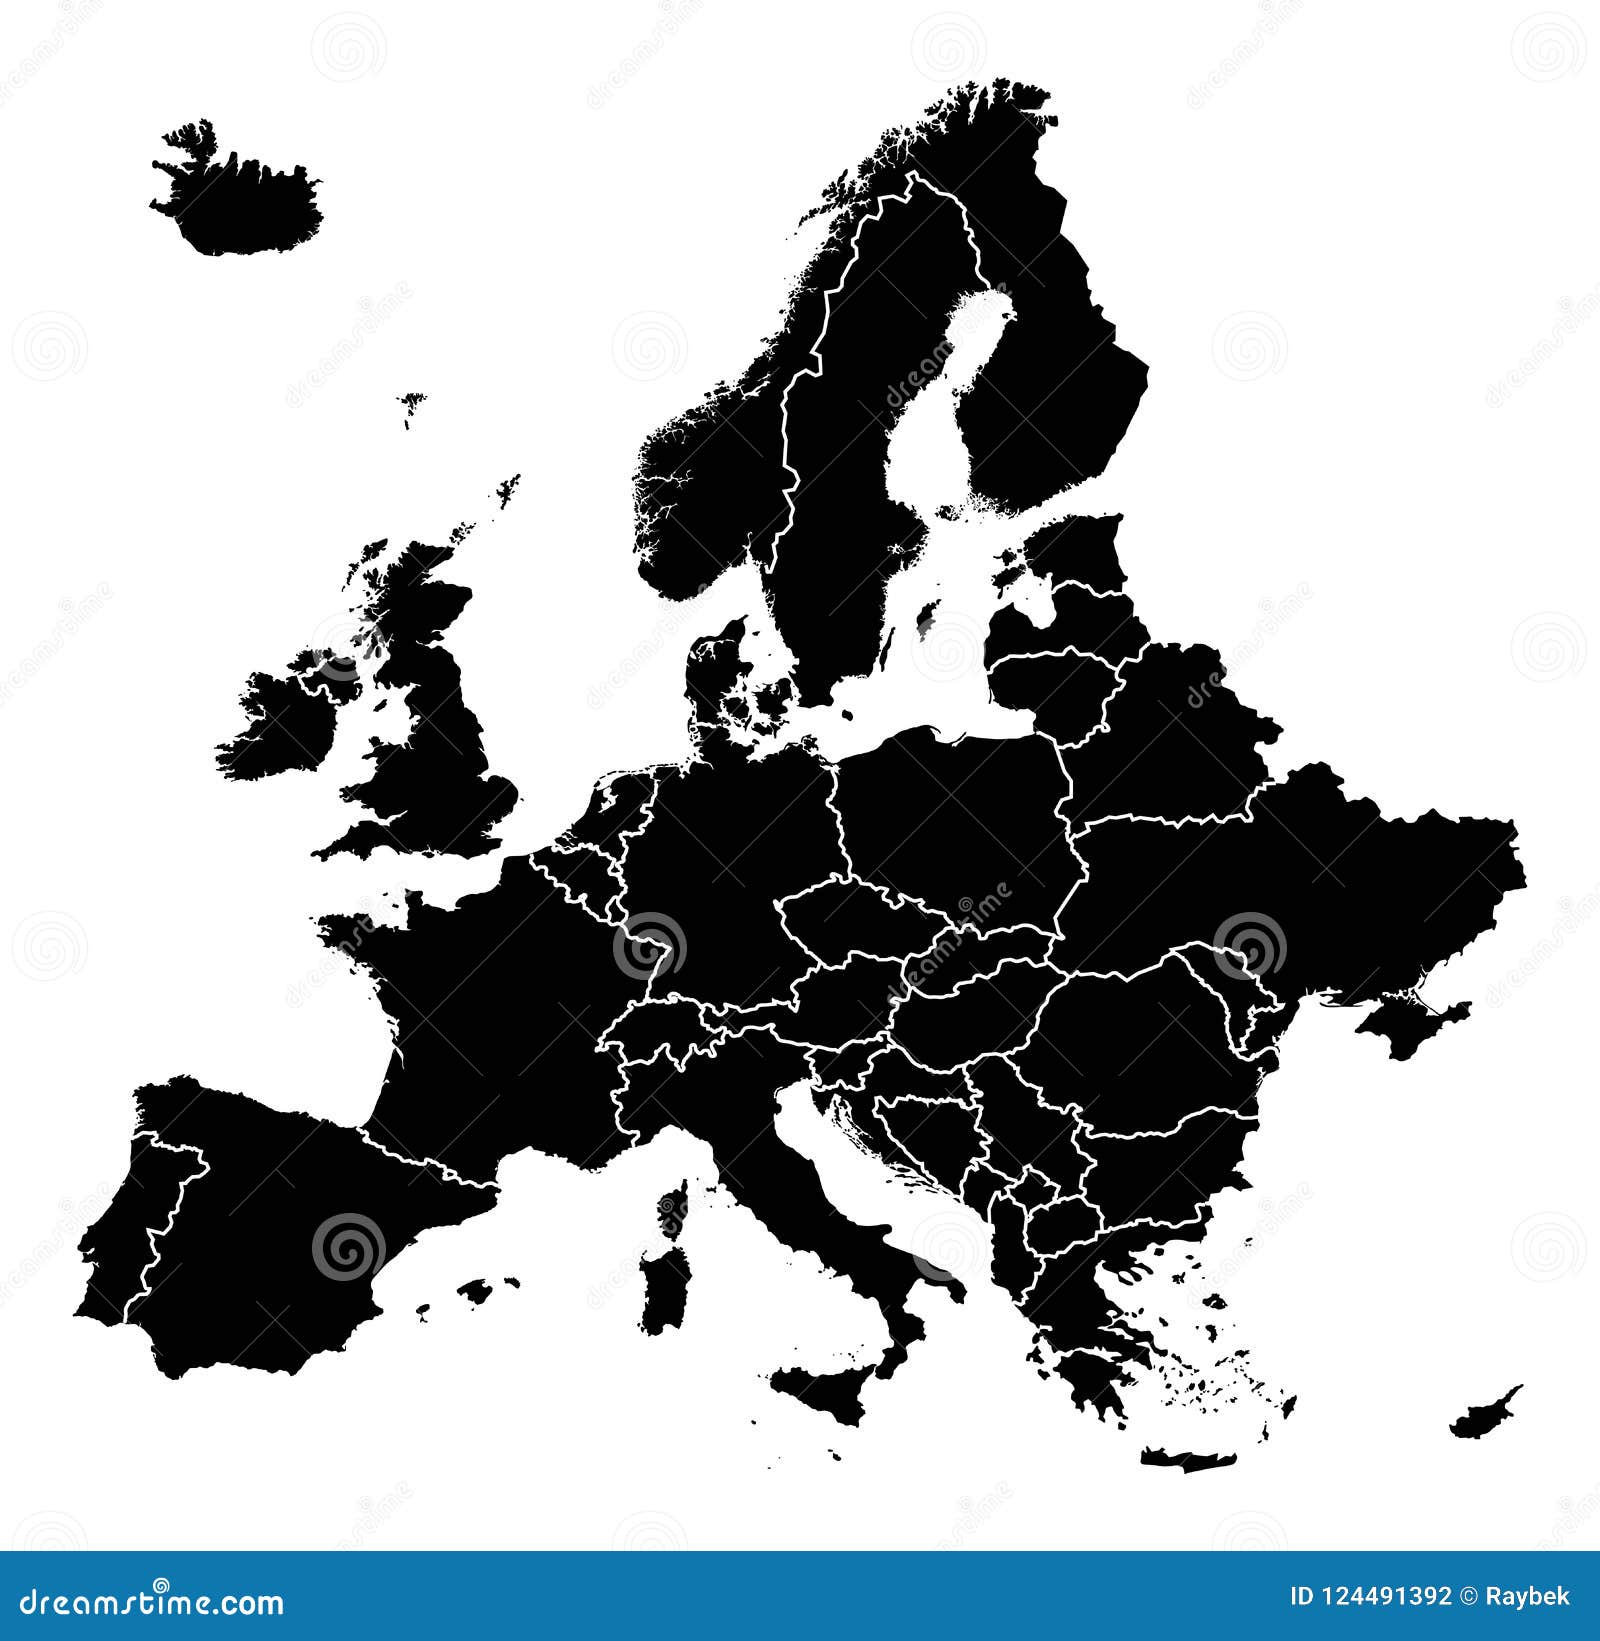 detalied map of europe